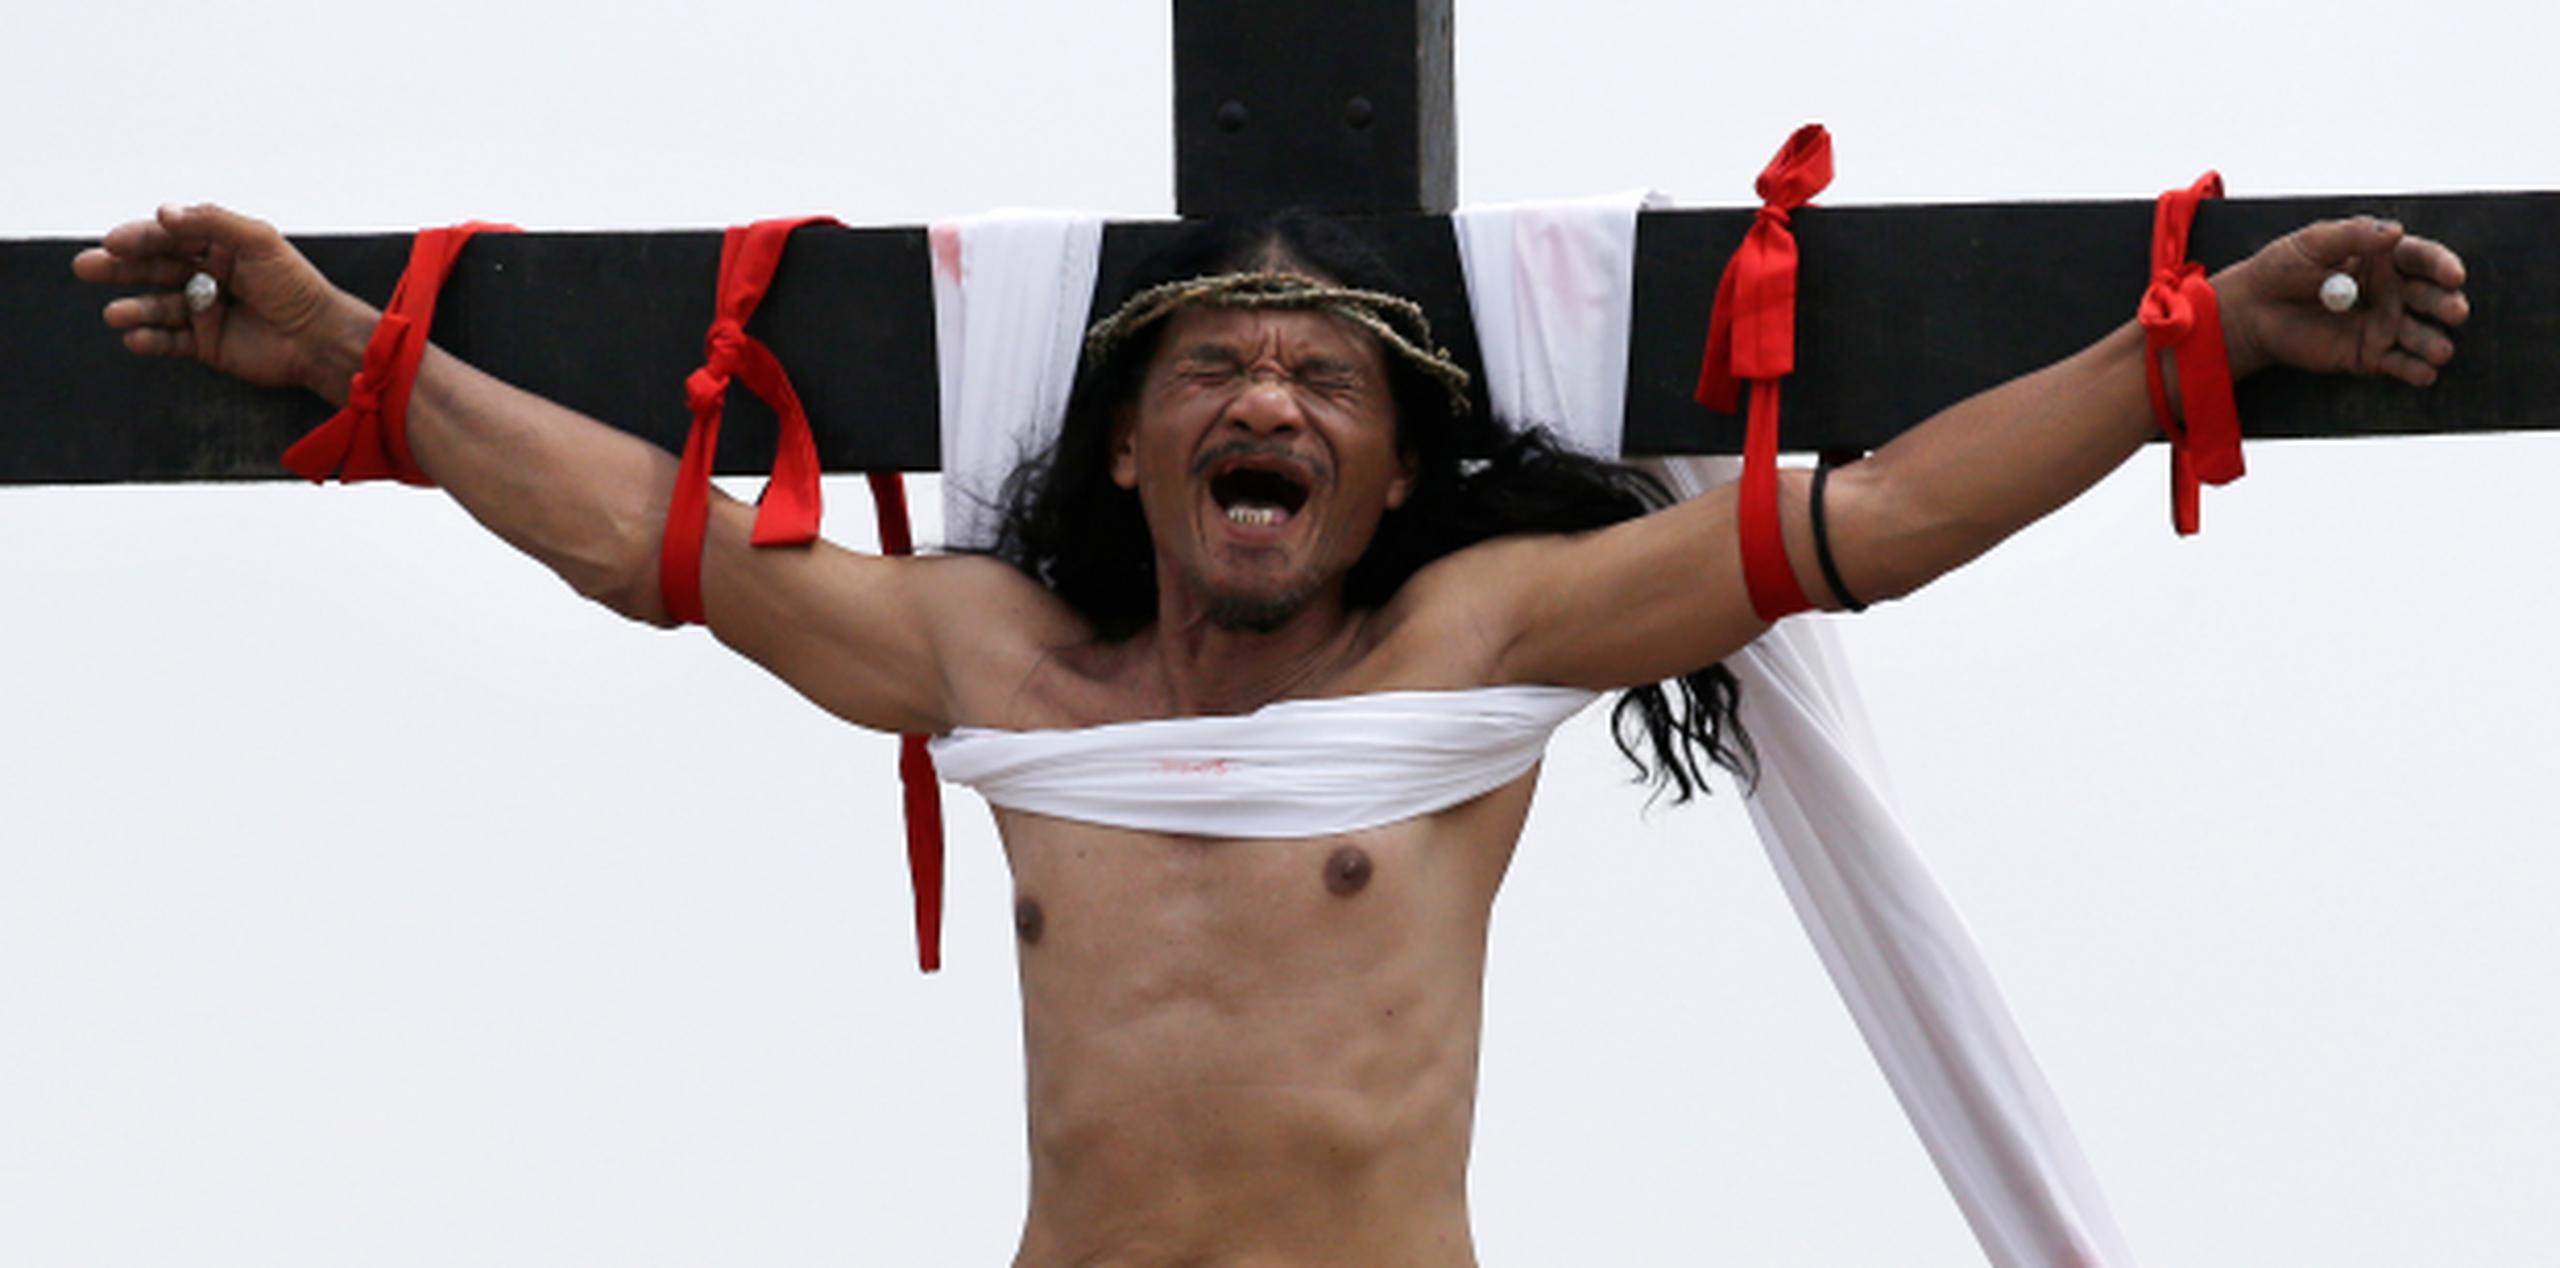 Aunque las crucifixiones se han vuelto una tradición veraniega para los lugareños, todavía dejan perplejos a muchos turistas extranjeros. (AP)